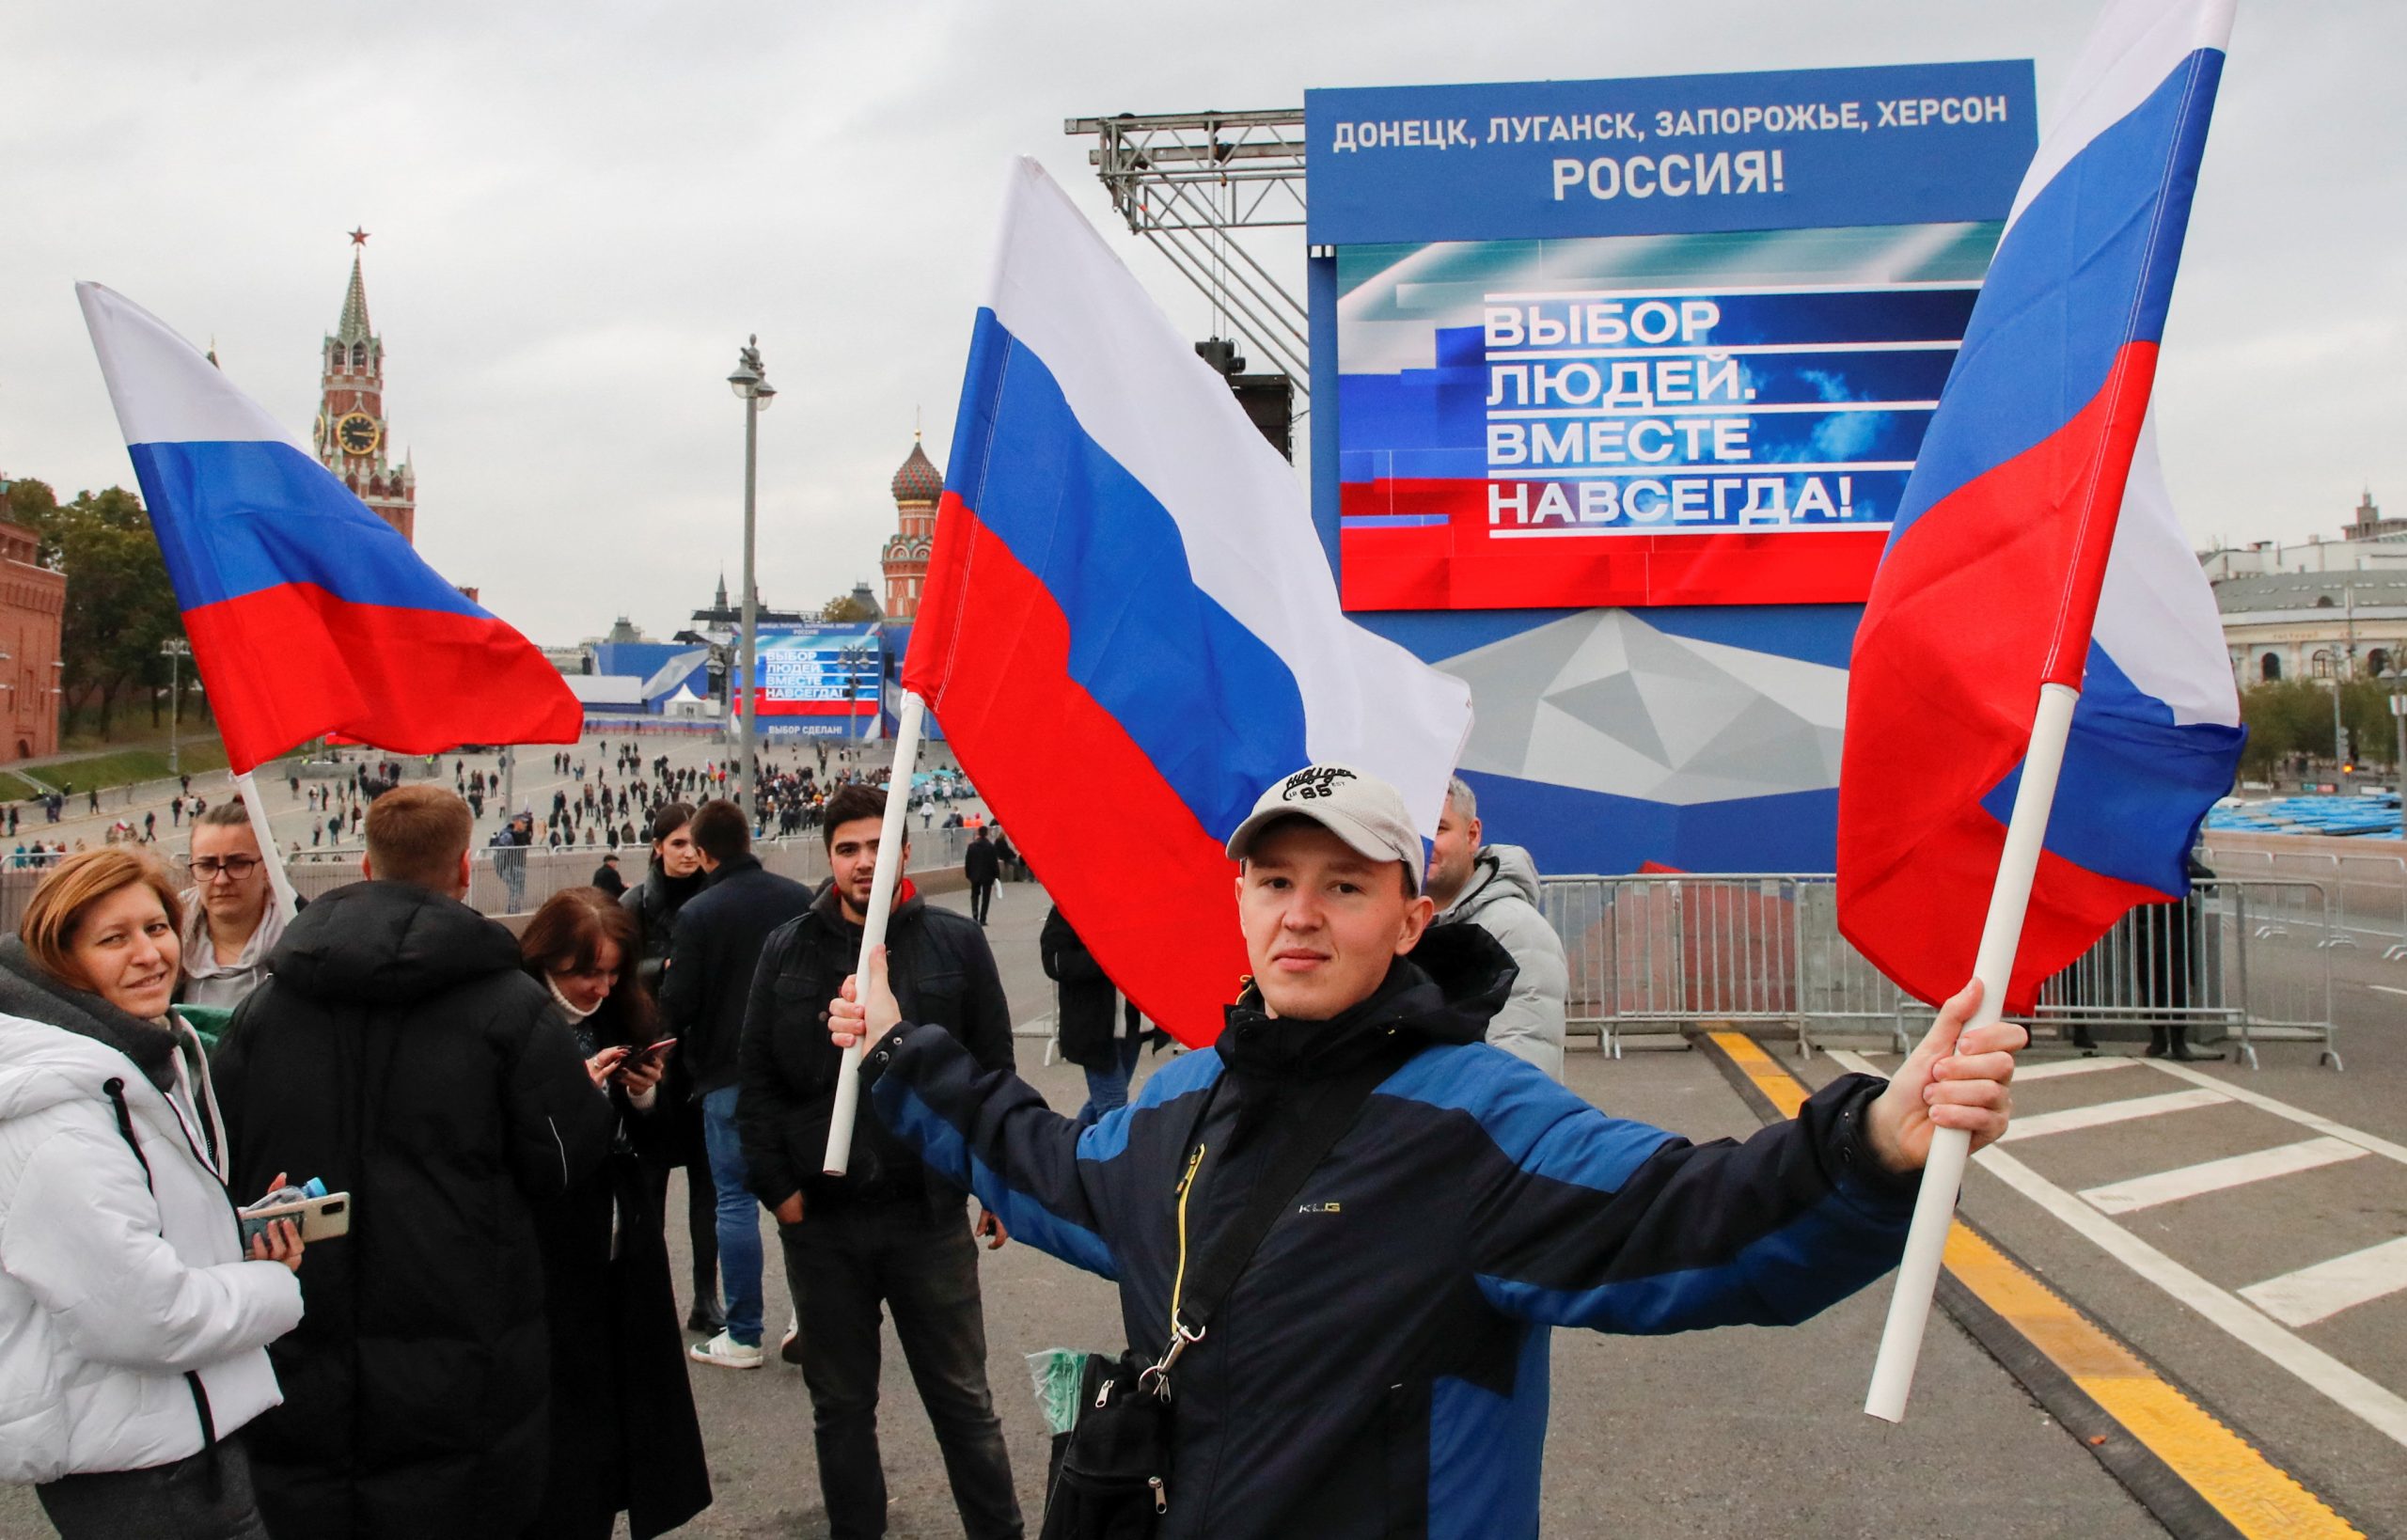 Slavje v Moskvi ob priključitvi Donbasa k Rusiji